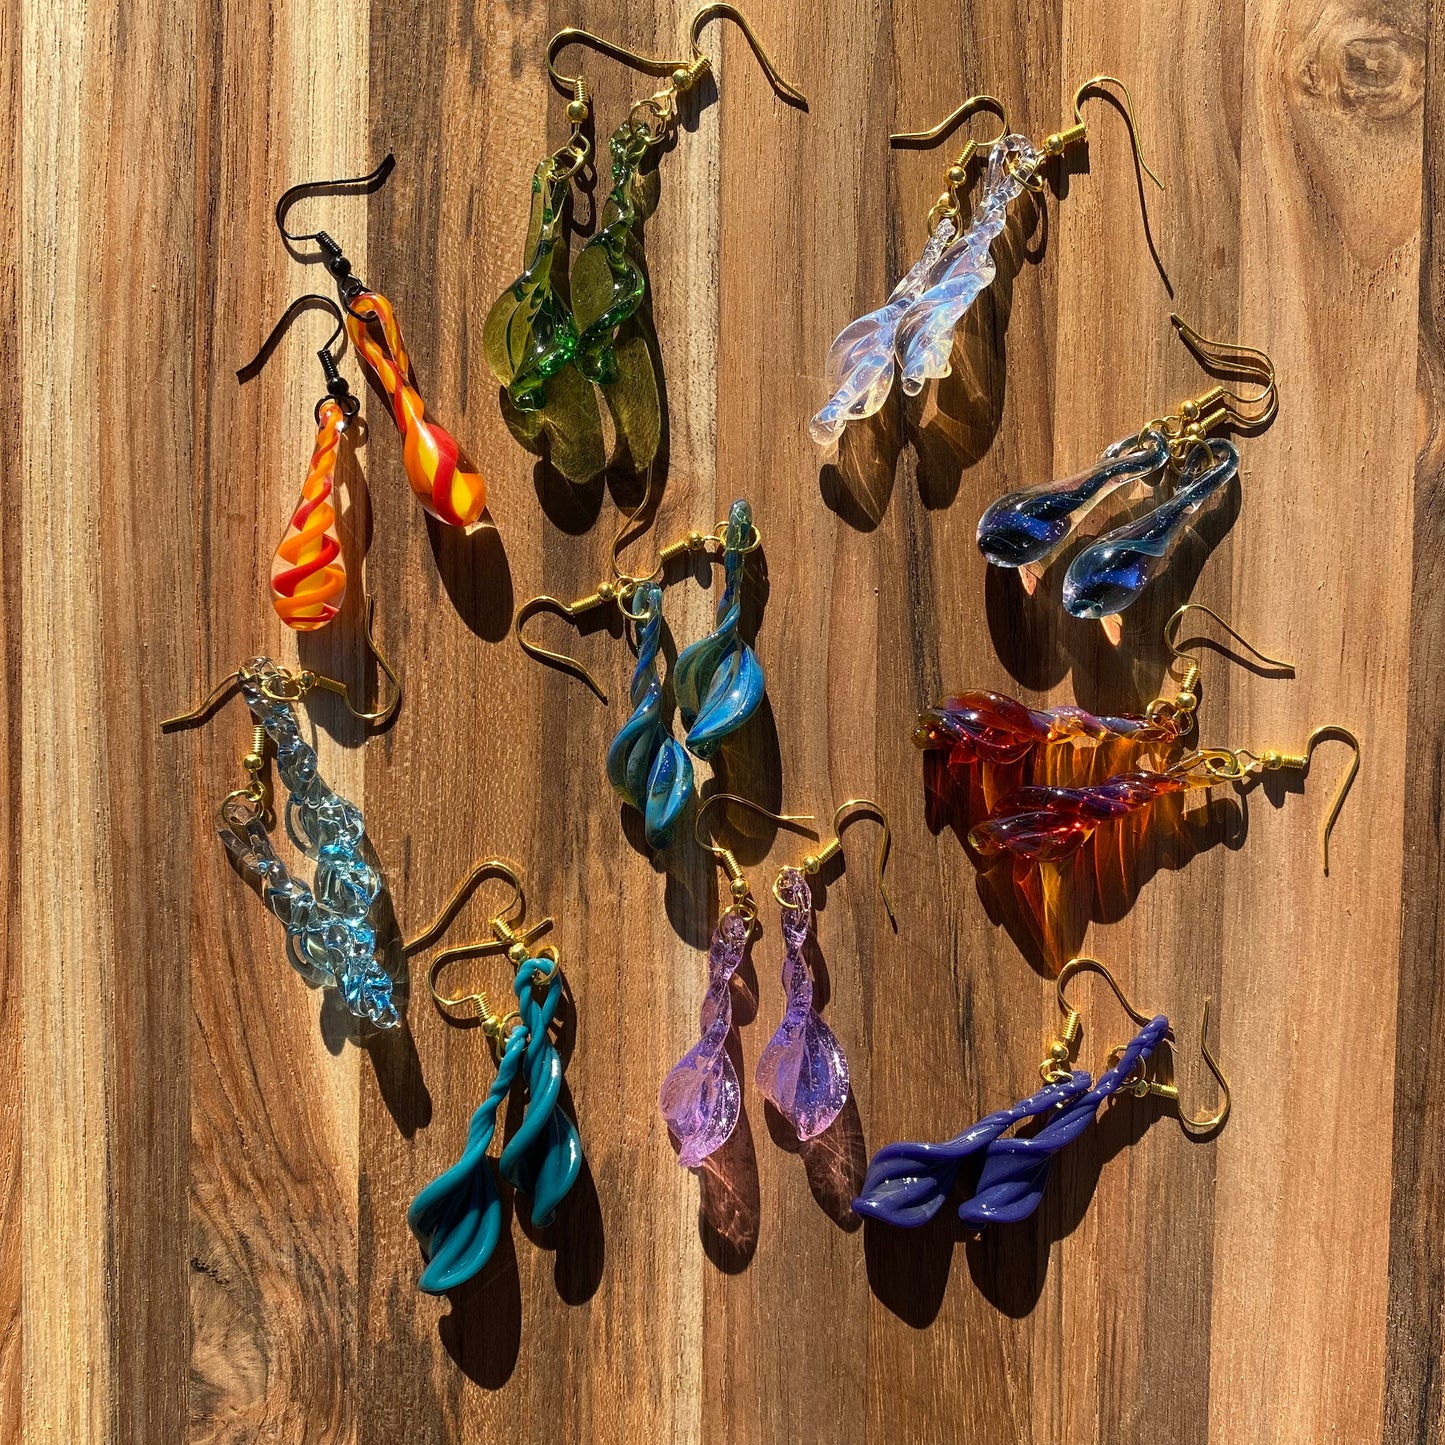 Amber-Purple Blown Glass Earrings - Handmade Jewelry | Art By Aaron Dye